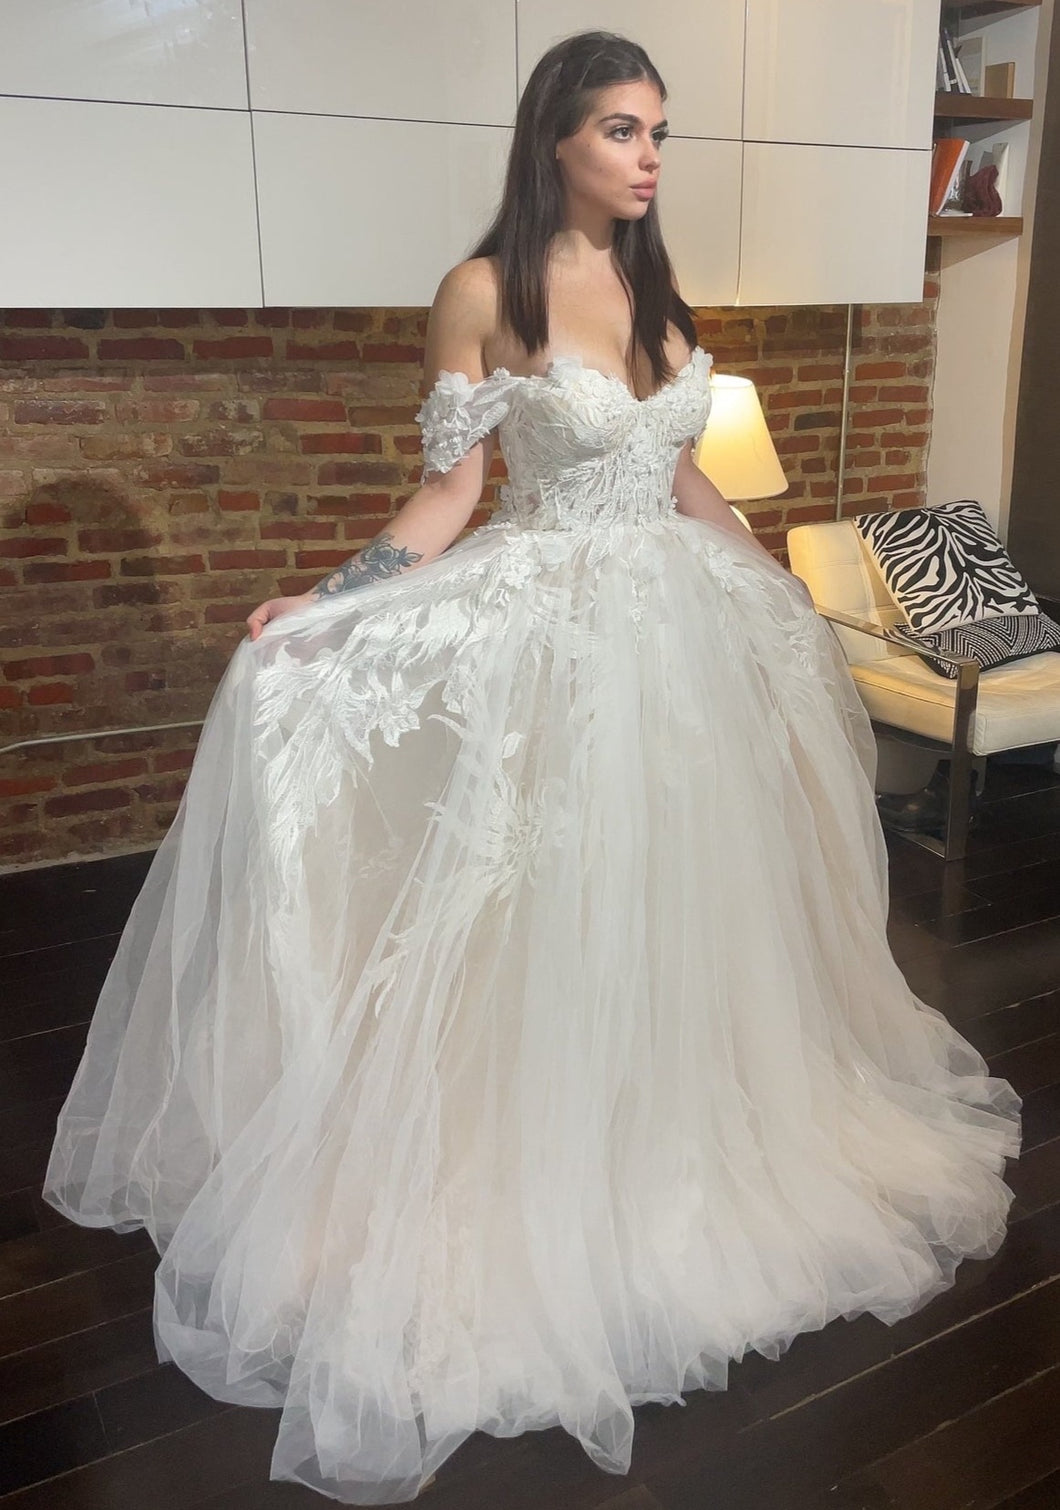 Riki Dalal 'Juliet' wedding dress size-06 NEW